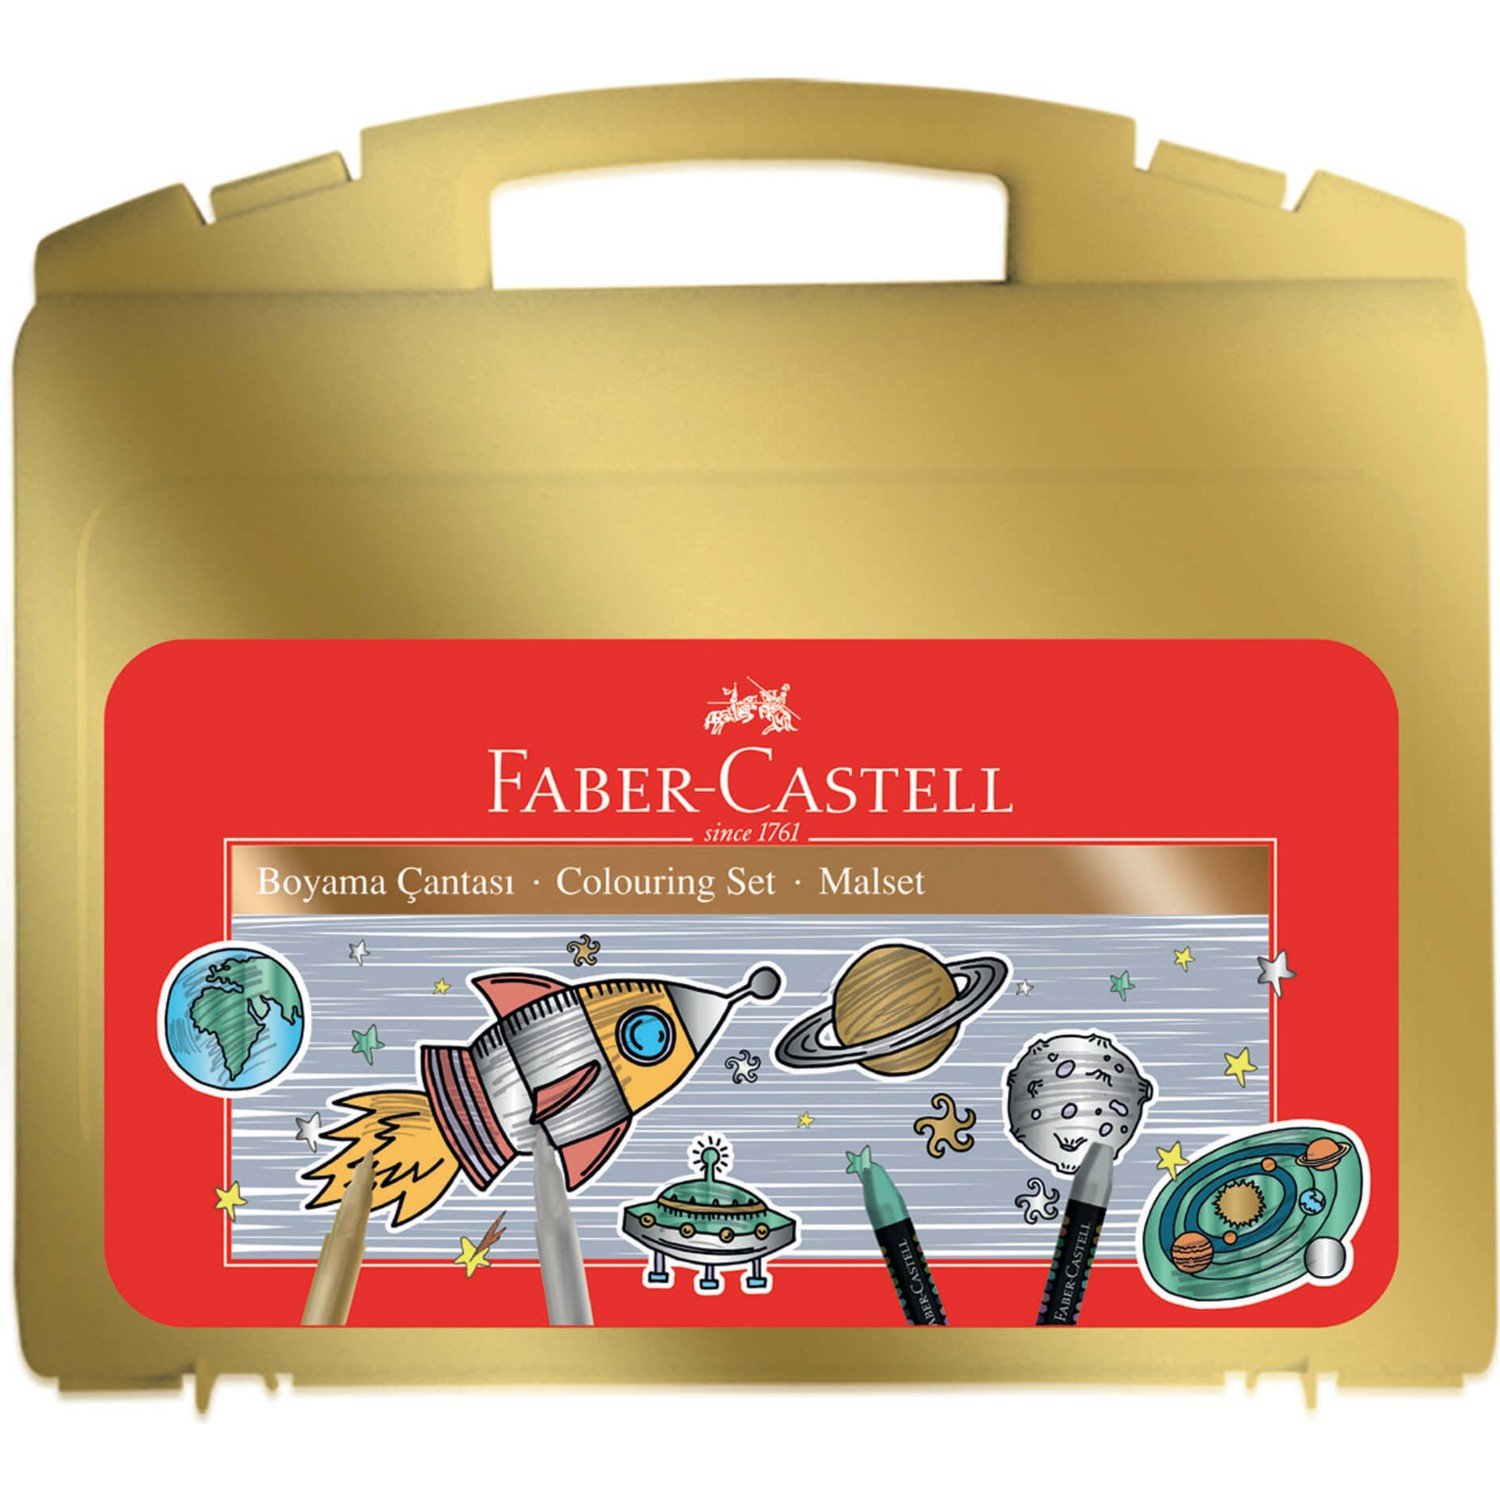 Faber Castell Metalik Boyama Çantası 34 Parça Set